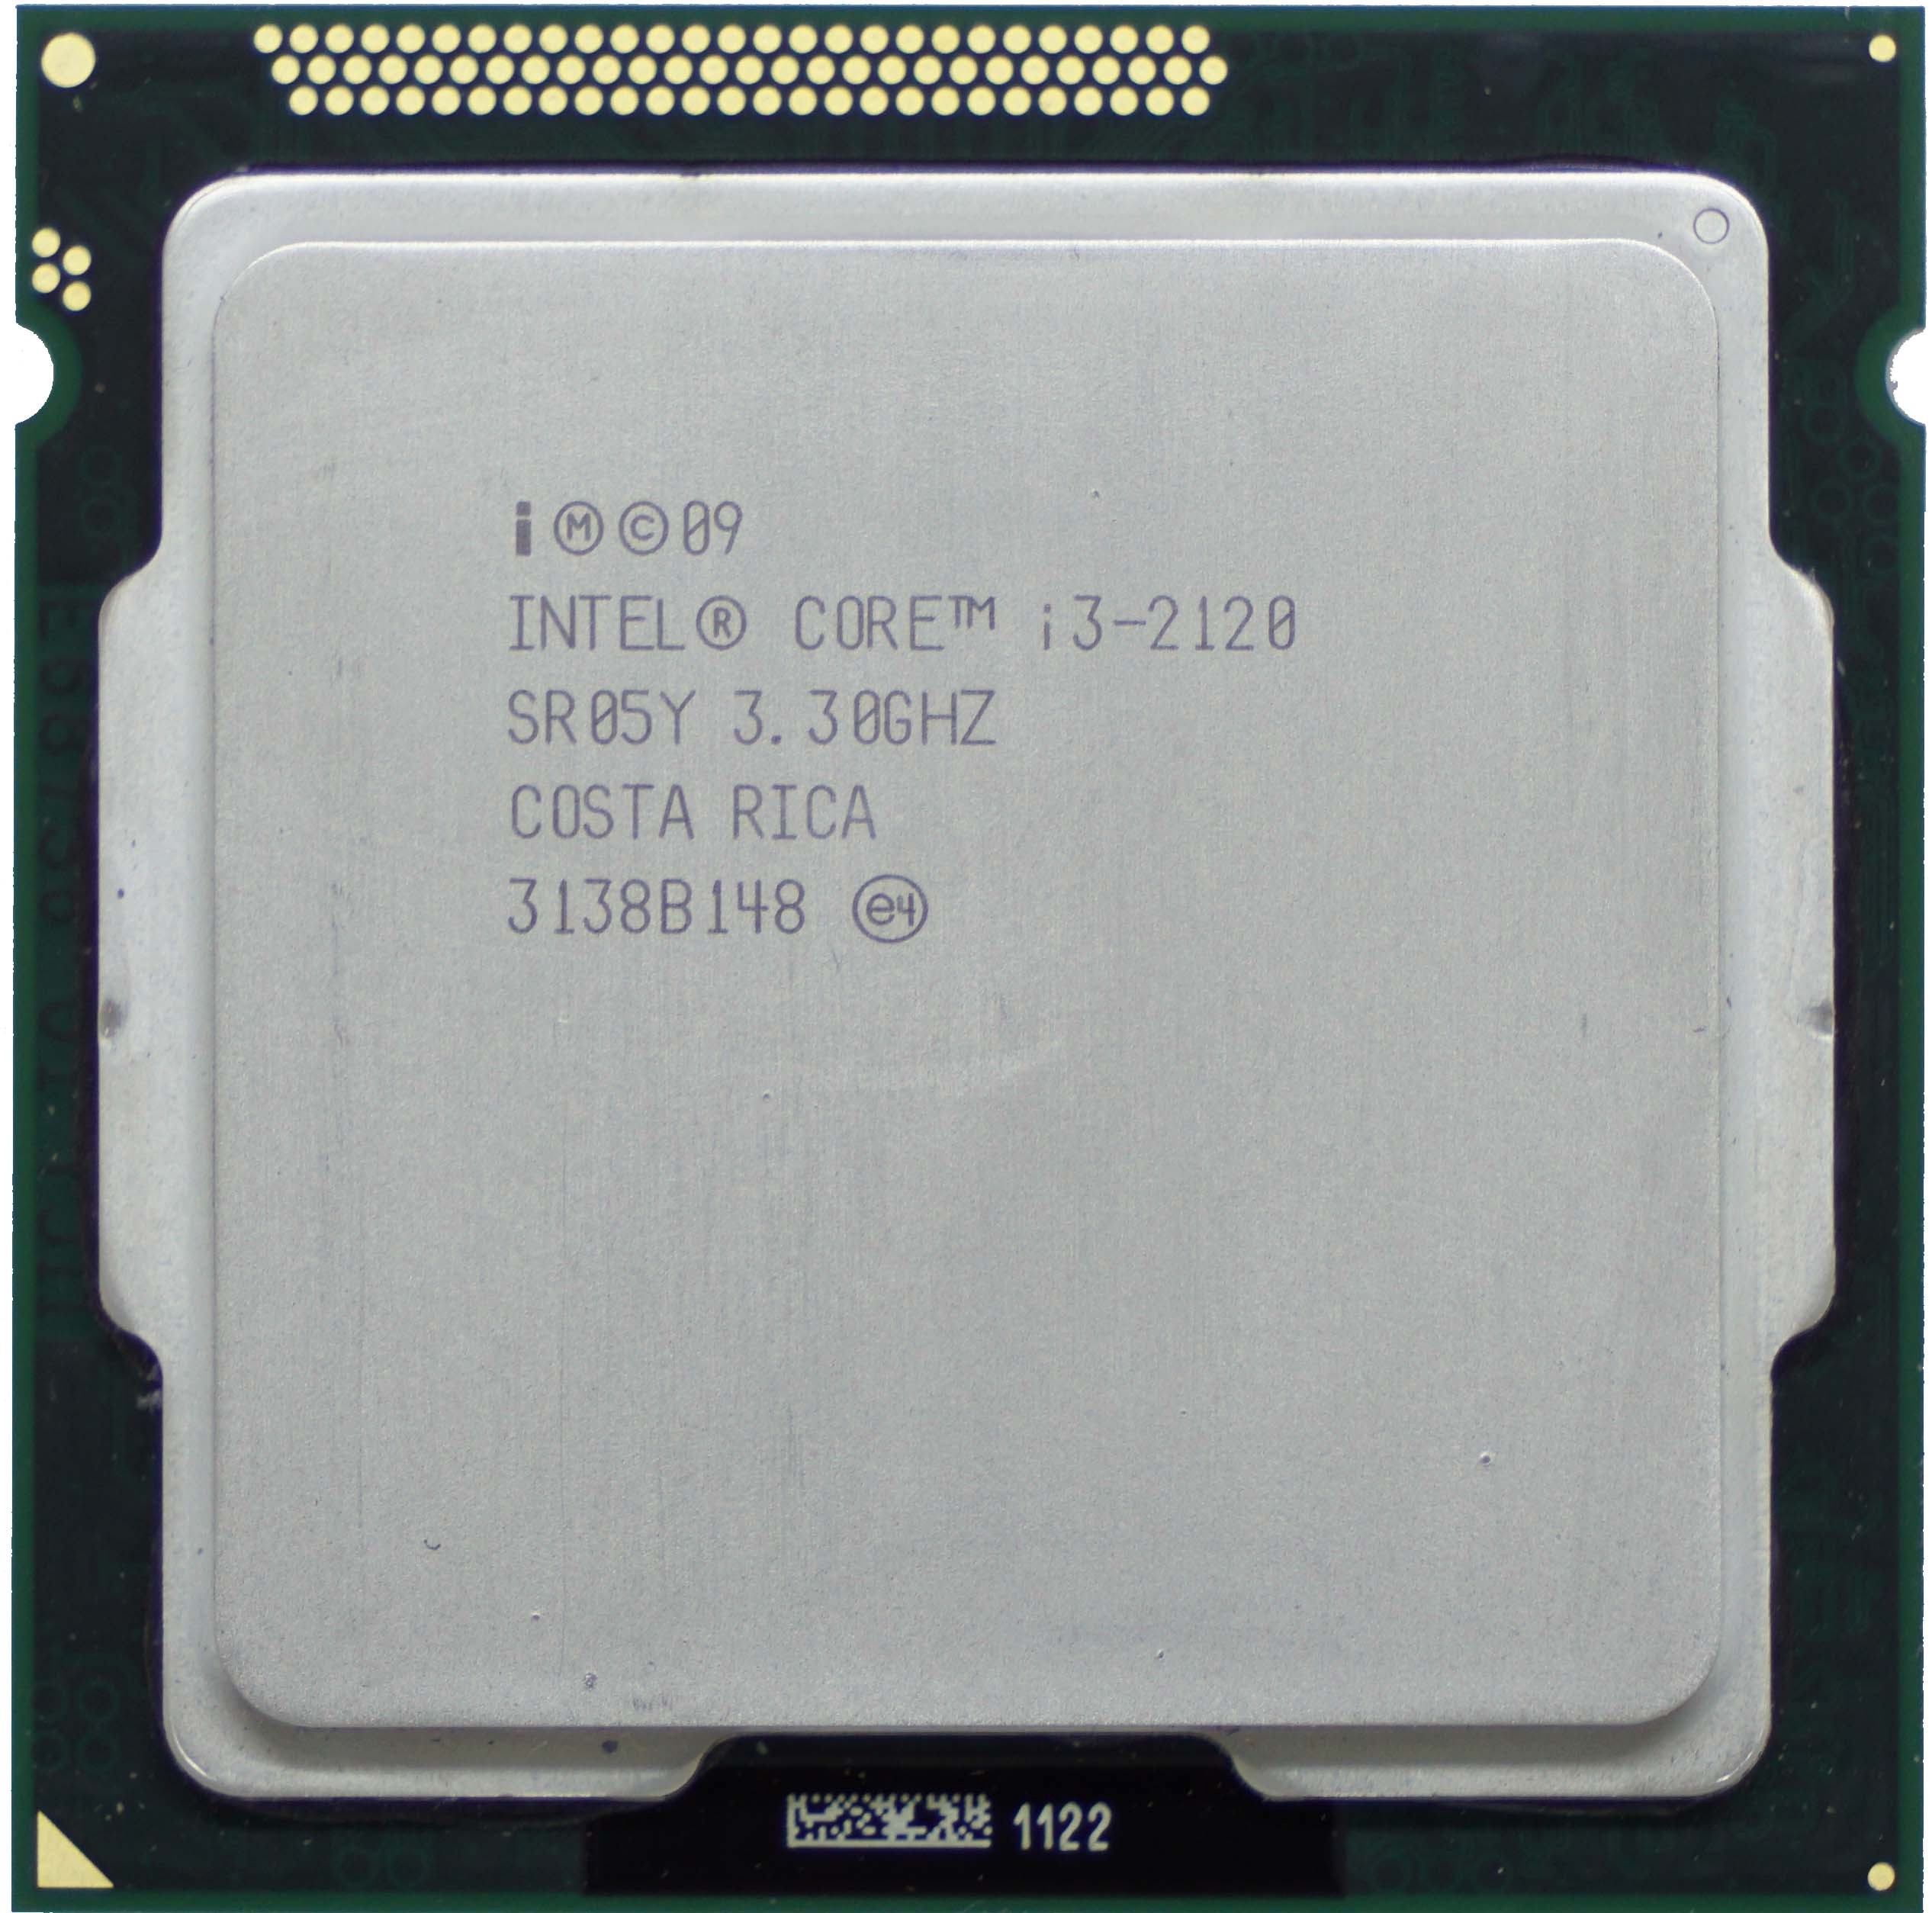 SR05Y Intel Core i3-2120 (SR05Y) 3.30Ghz Dual (2) Core LGA1155 65W CPU